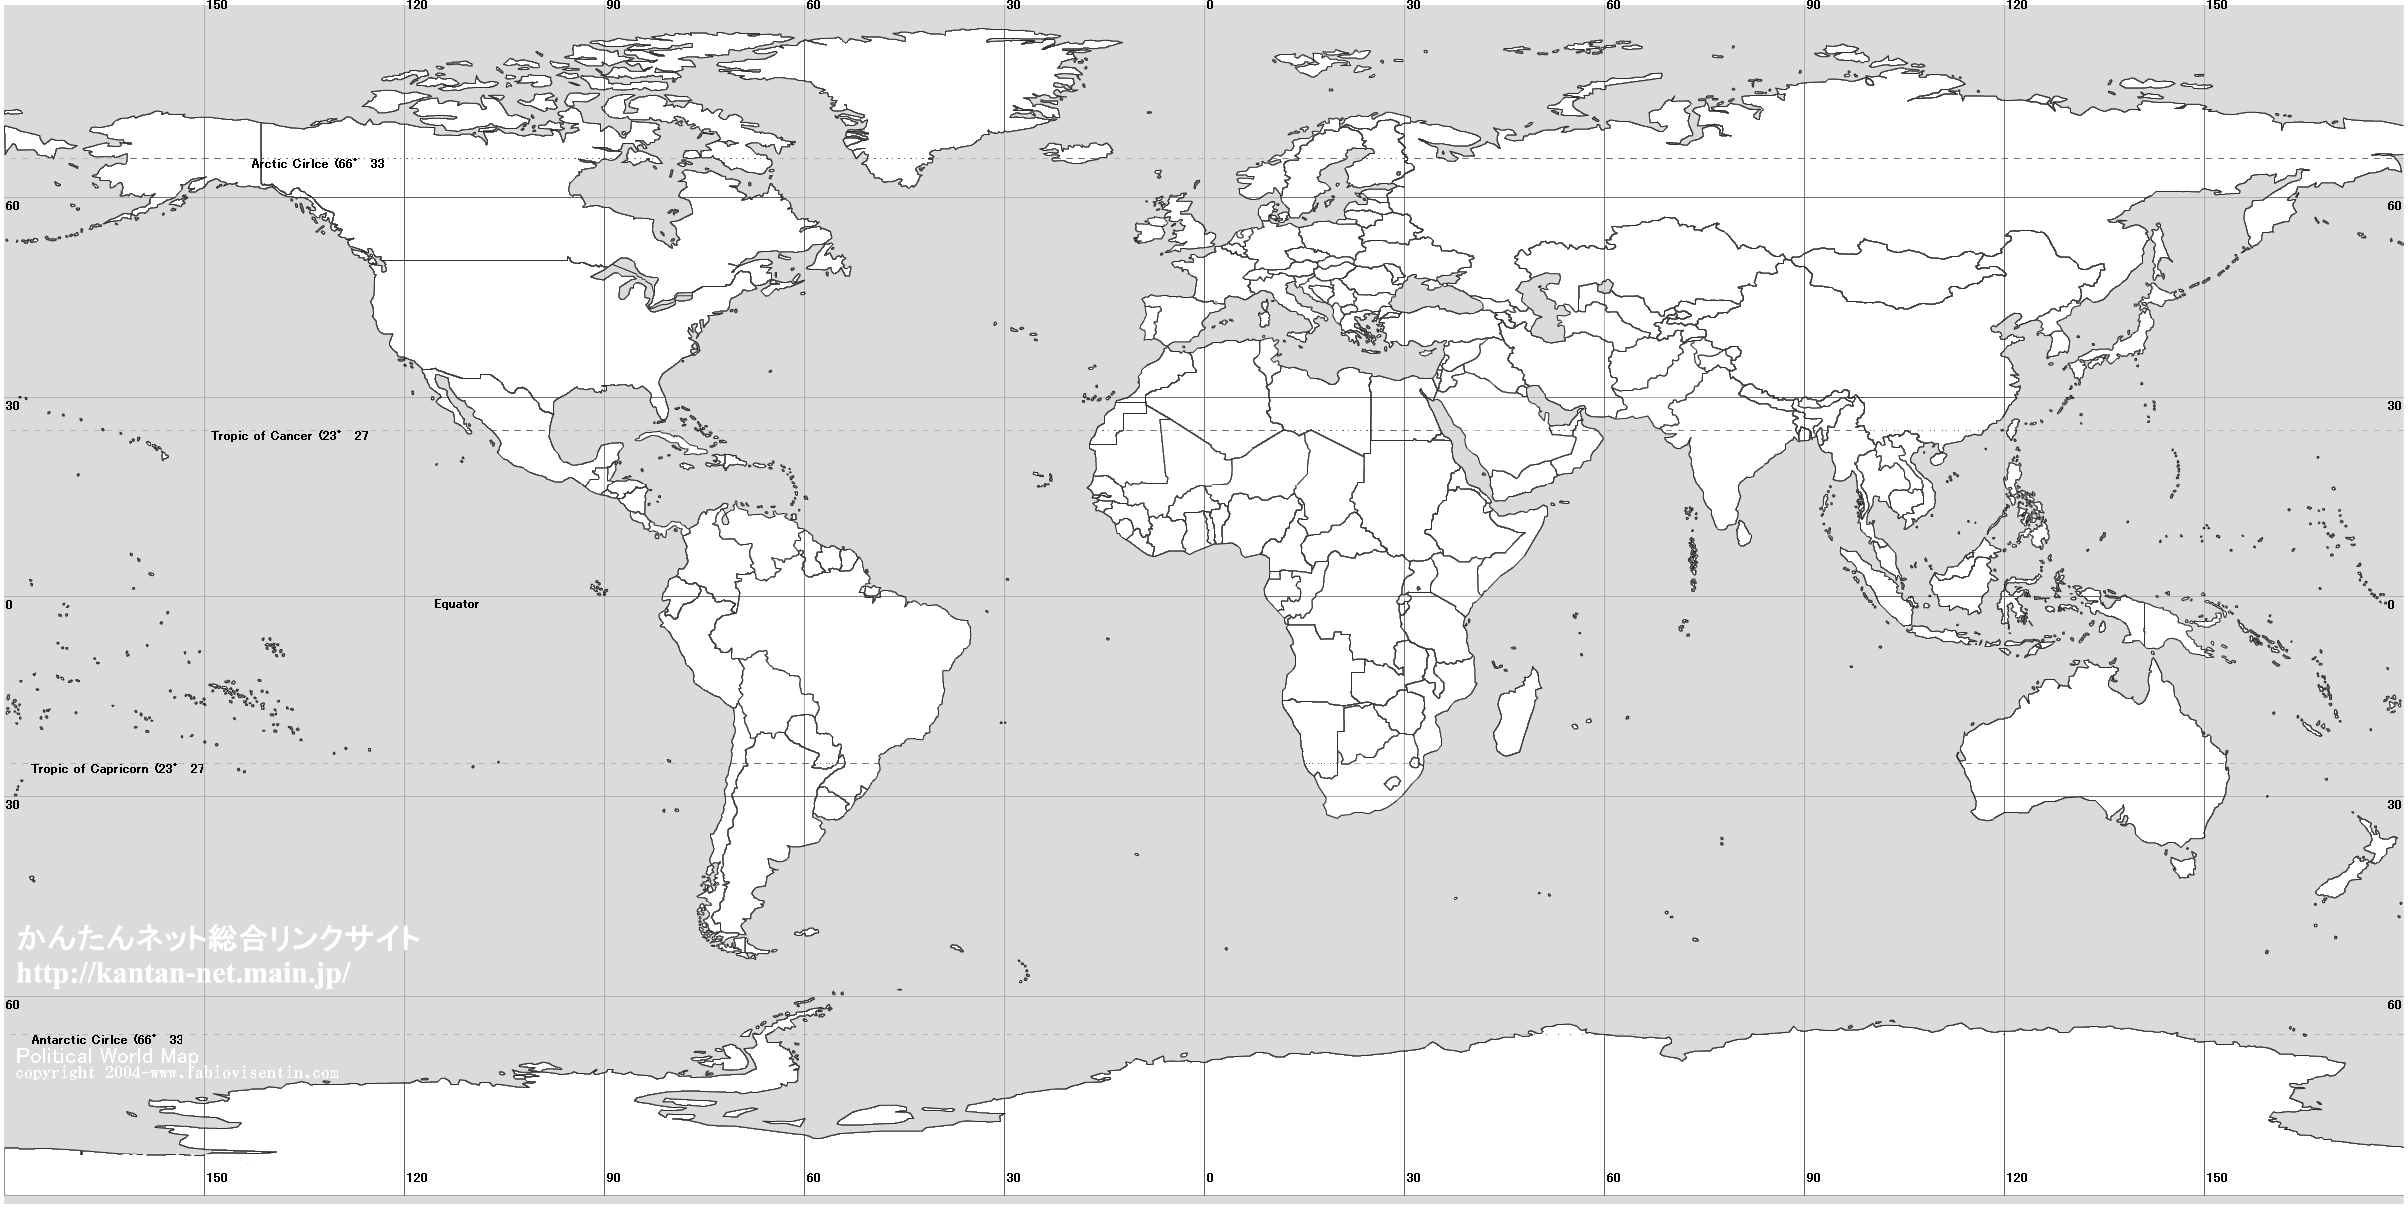 Image World Map